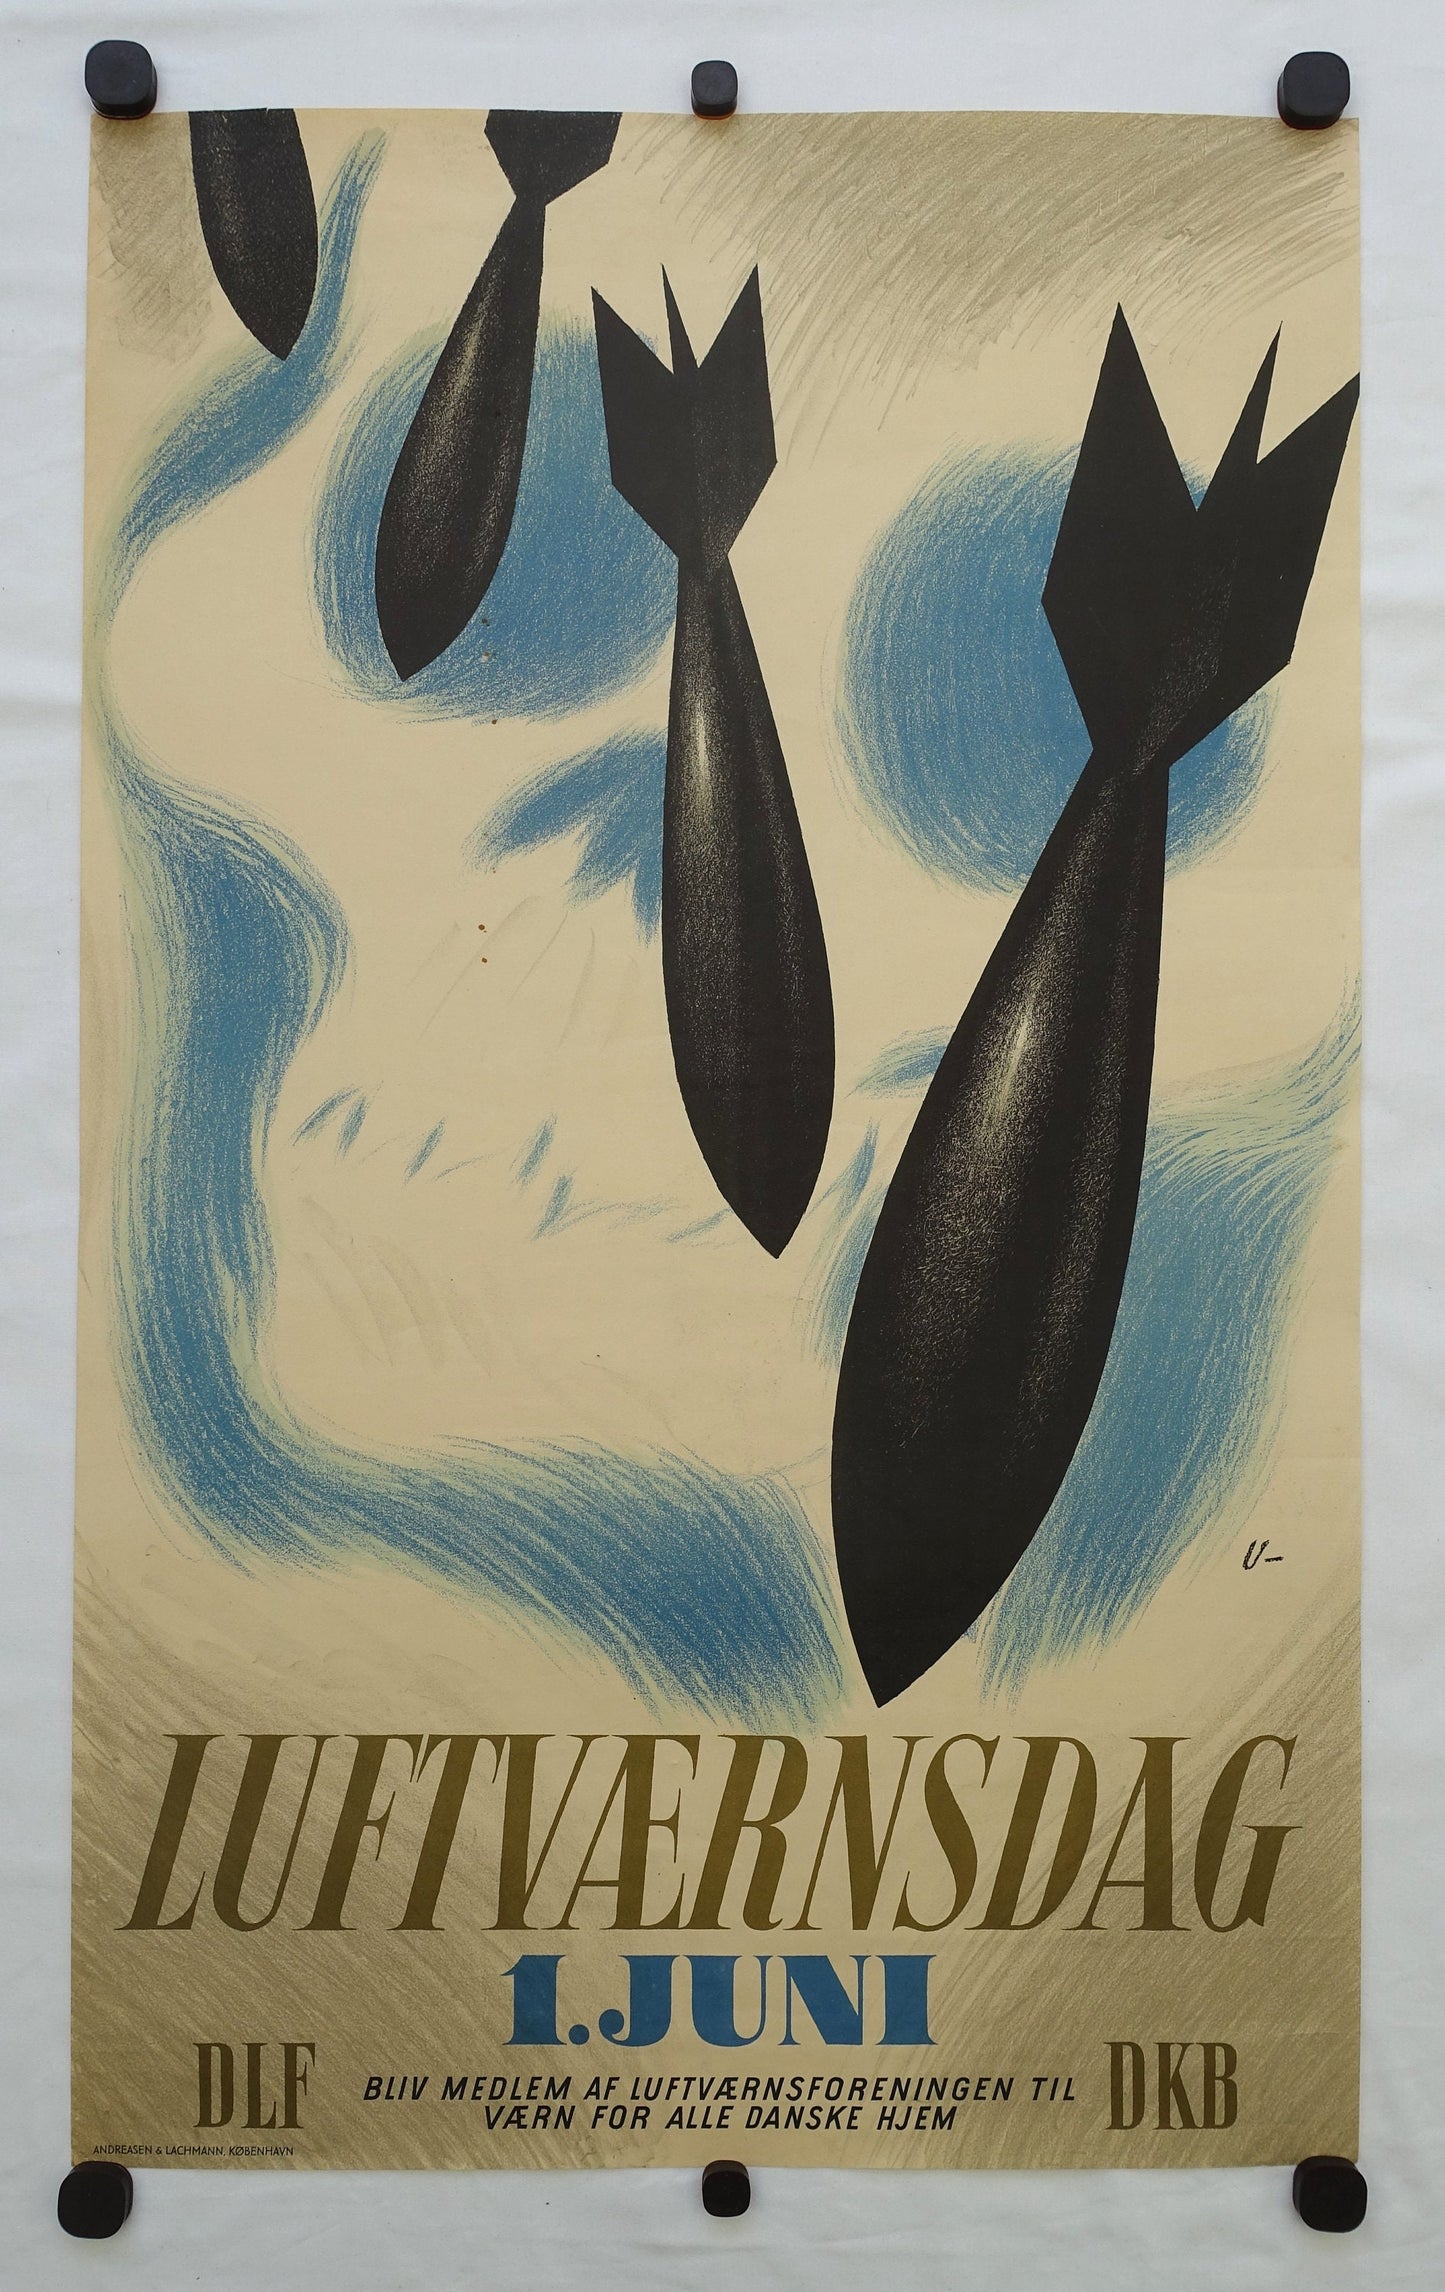 1942 Bombs Luftværnsdag by Arne Ungermann - Original Vintage Poster